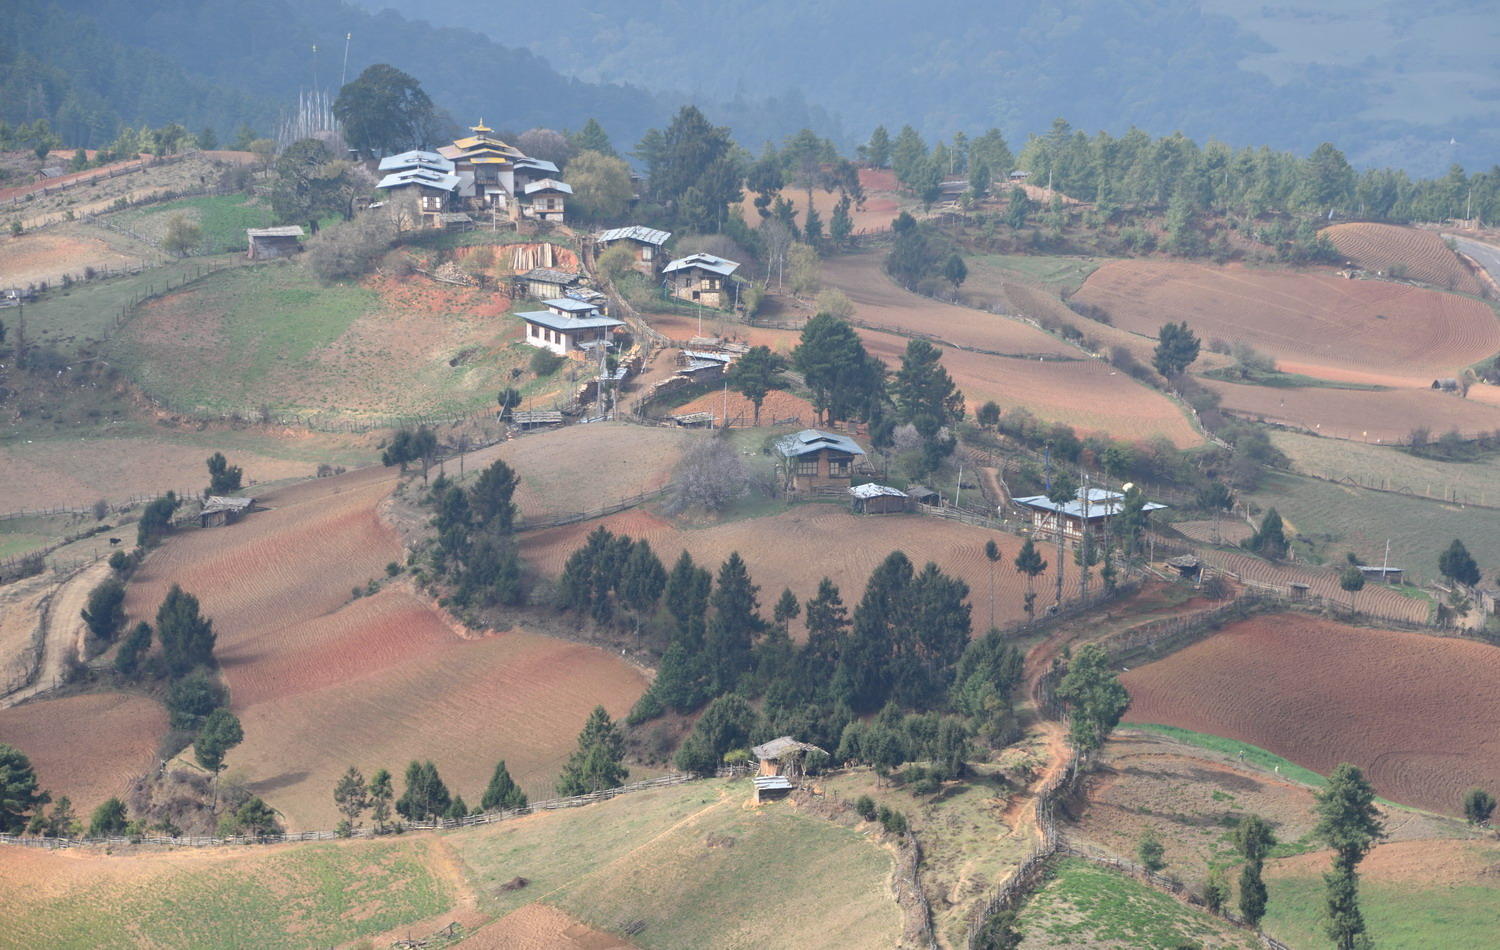 DSC_6433_1A1 - Ura Valley, Bhutan